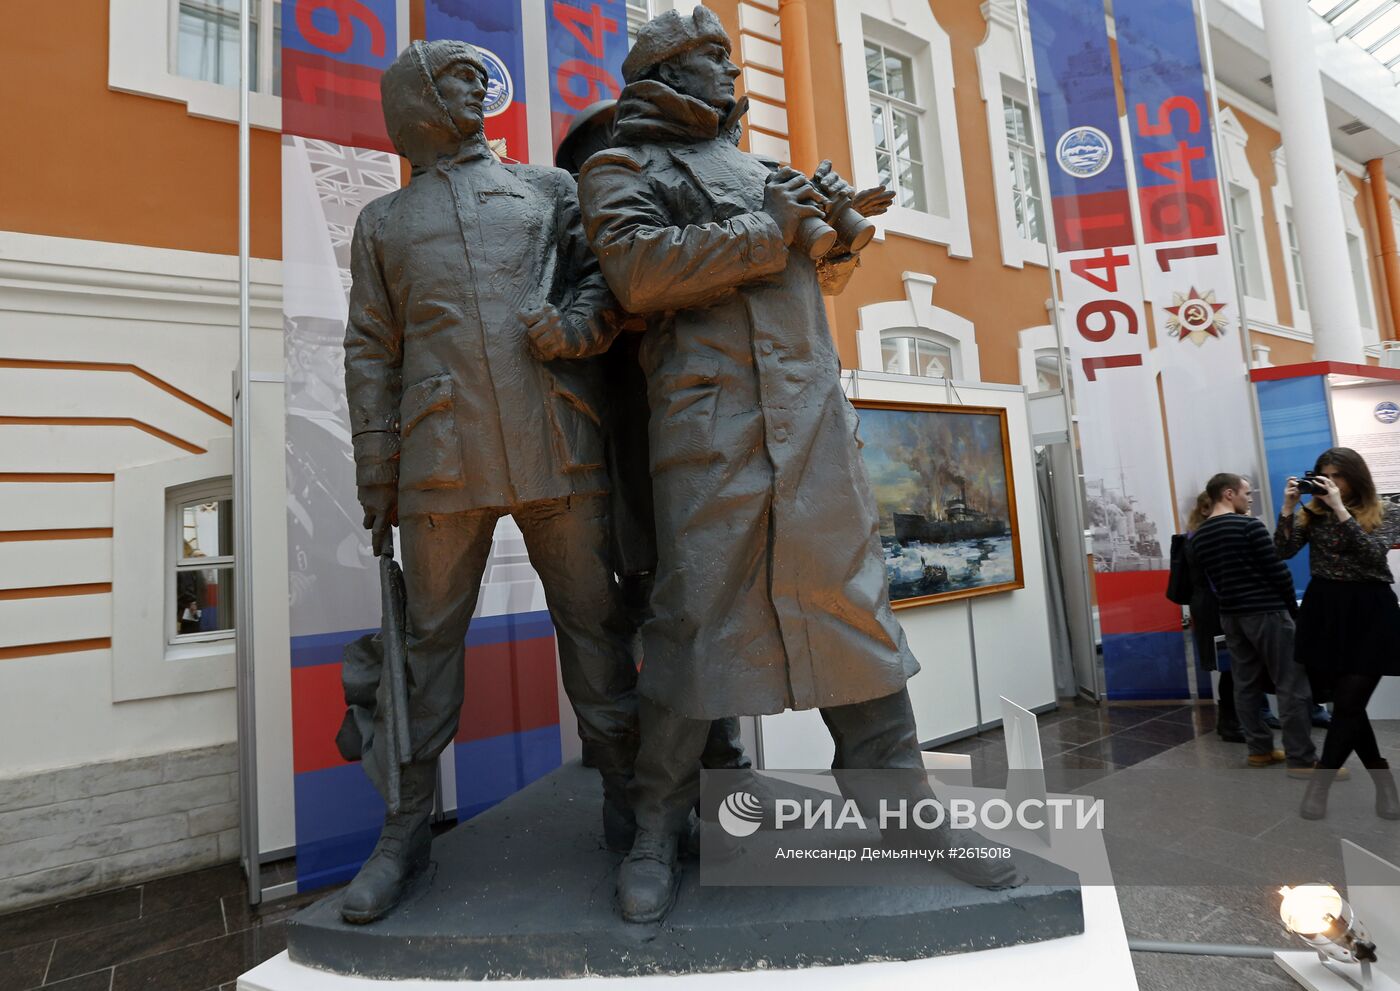 Выставка "Будни Полярного конвоя" в Петропавловской крепости